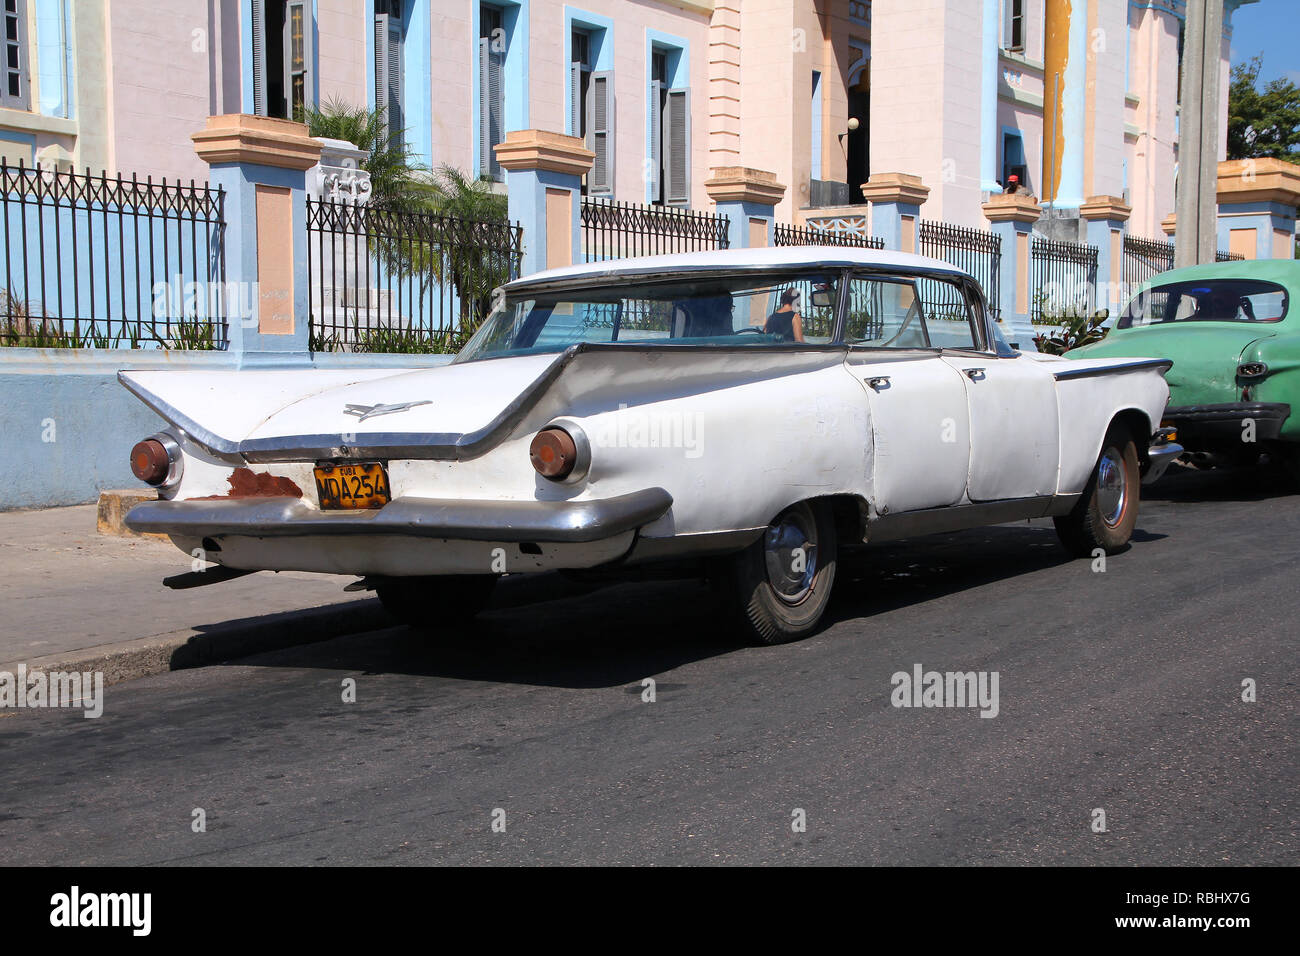 MATANZAS, CUBA - febbraio 22: Old American Buick Electra il 22 febbraio 2011 in Matanzas, Cuba. Nuova modifica della legge consente di cubani al commercio di automobili. Cars mi Foto Stock